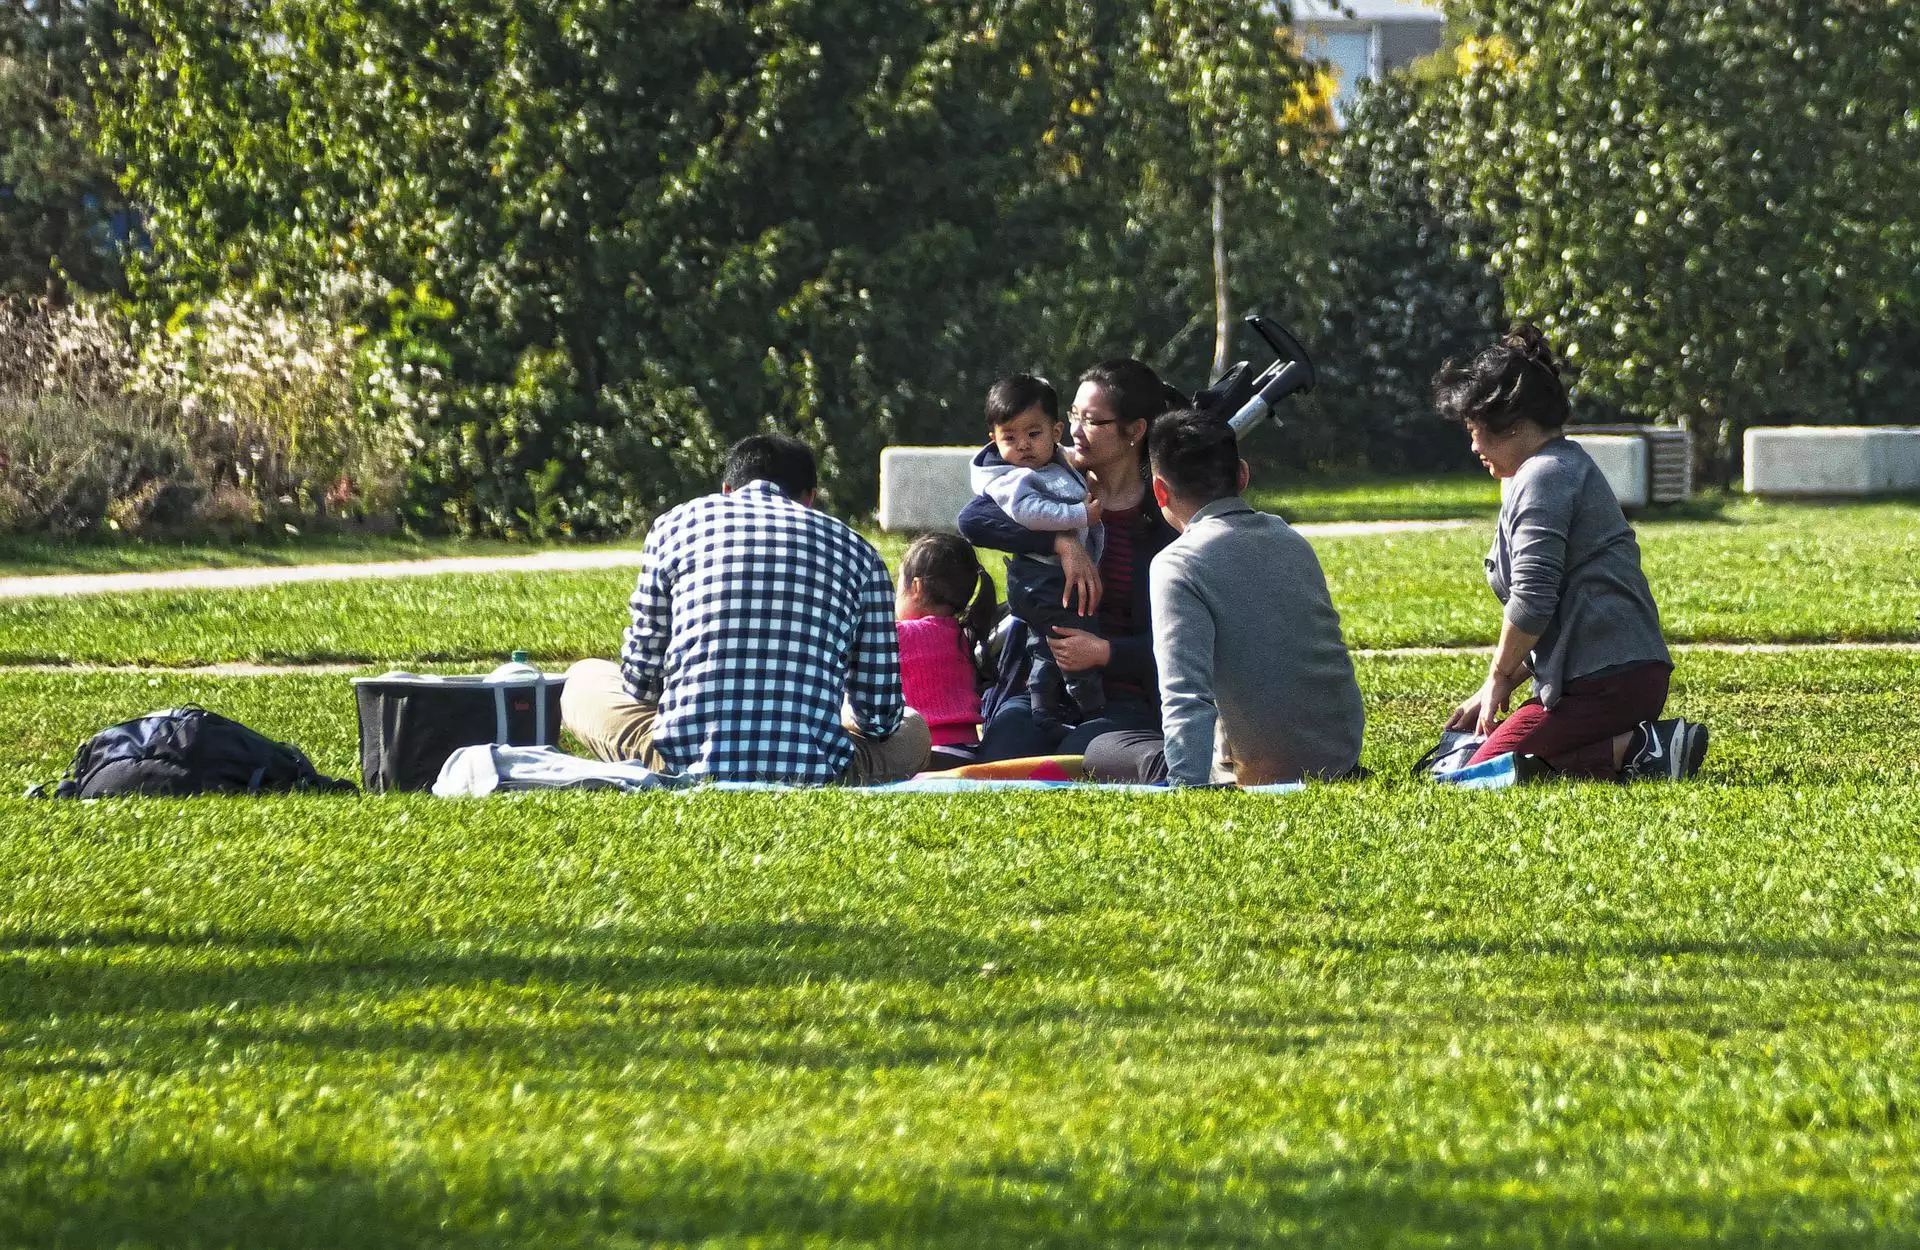 Family at a picnic